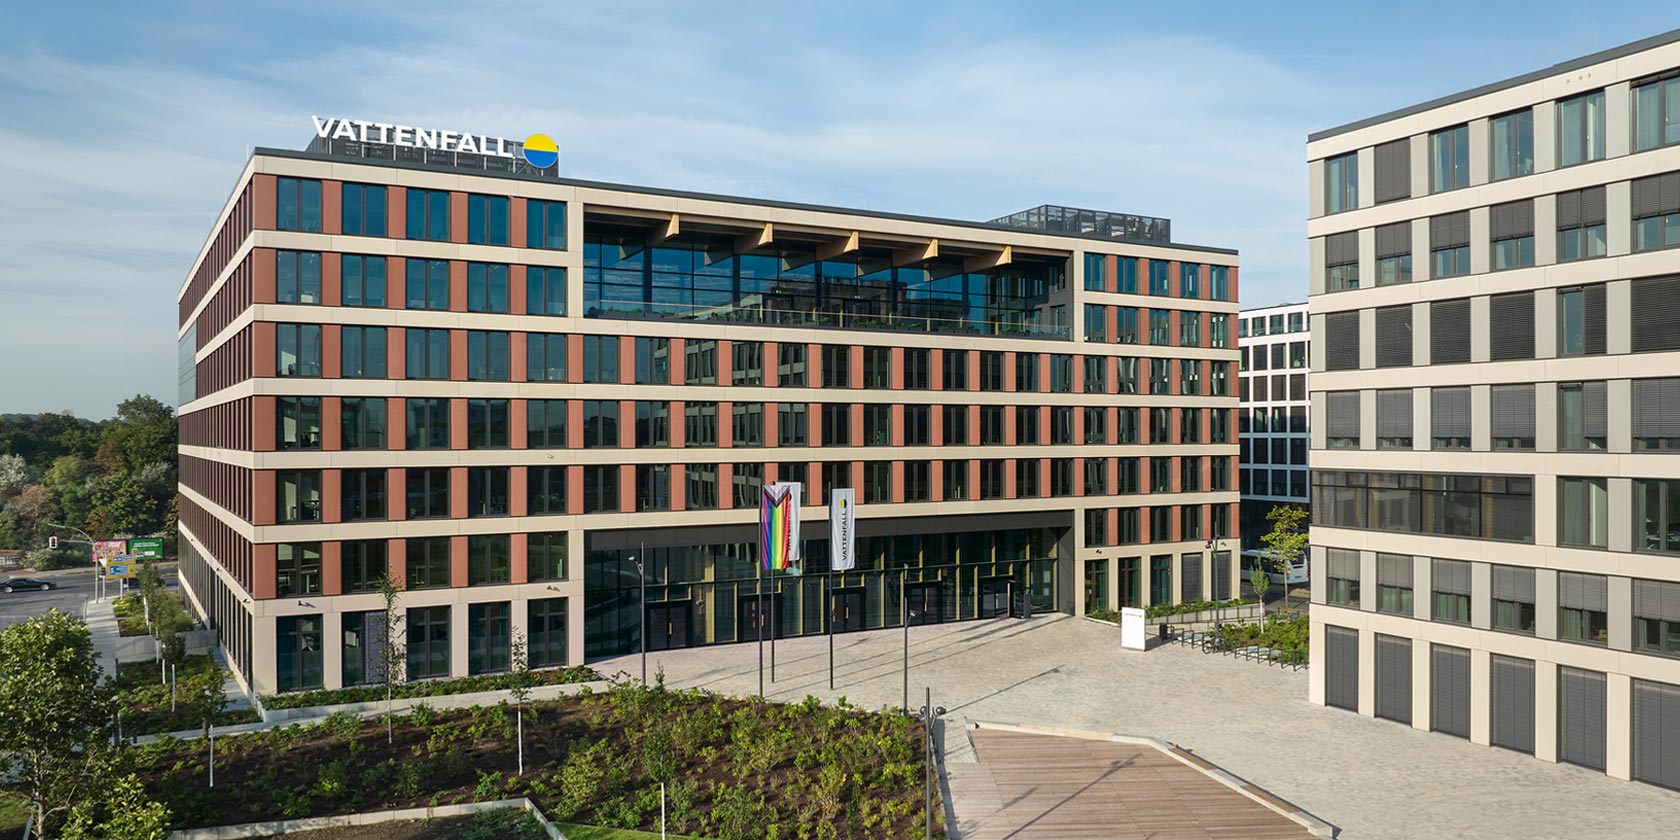 Vattenfall's German head office in Berlin